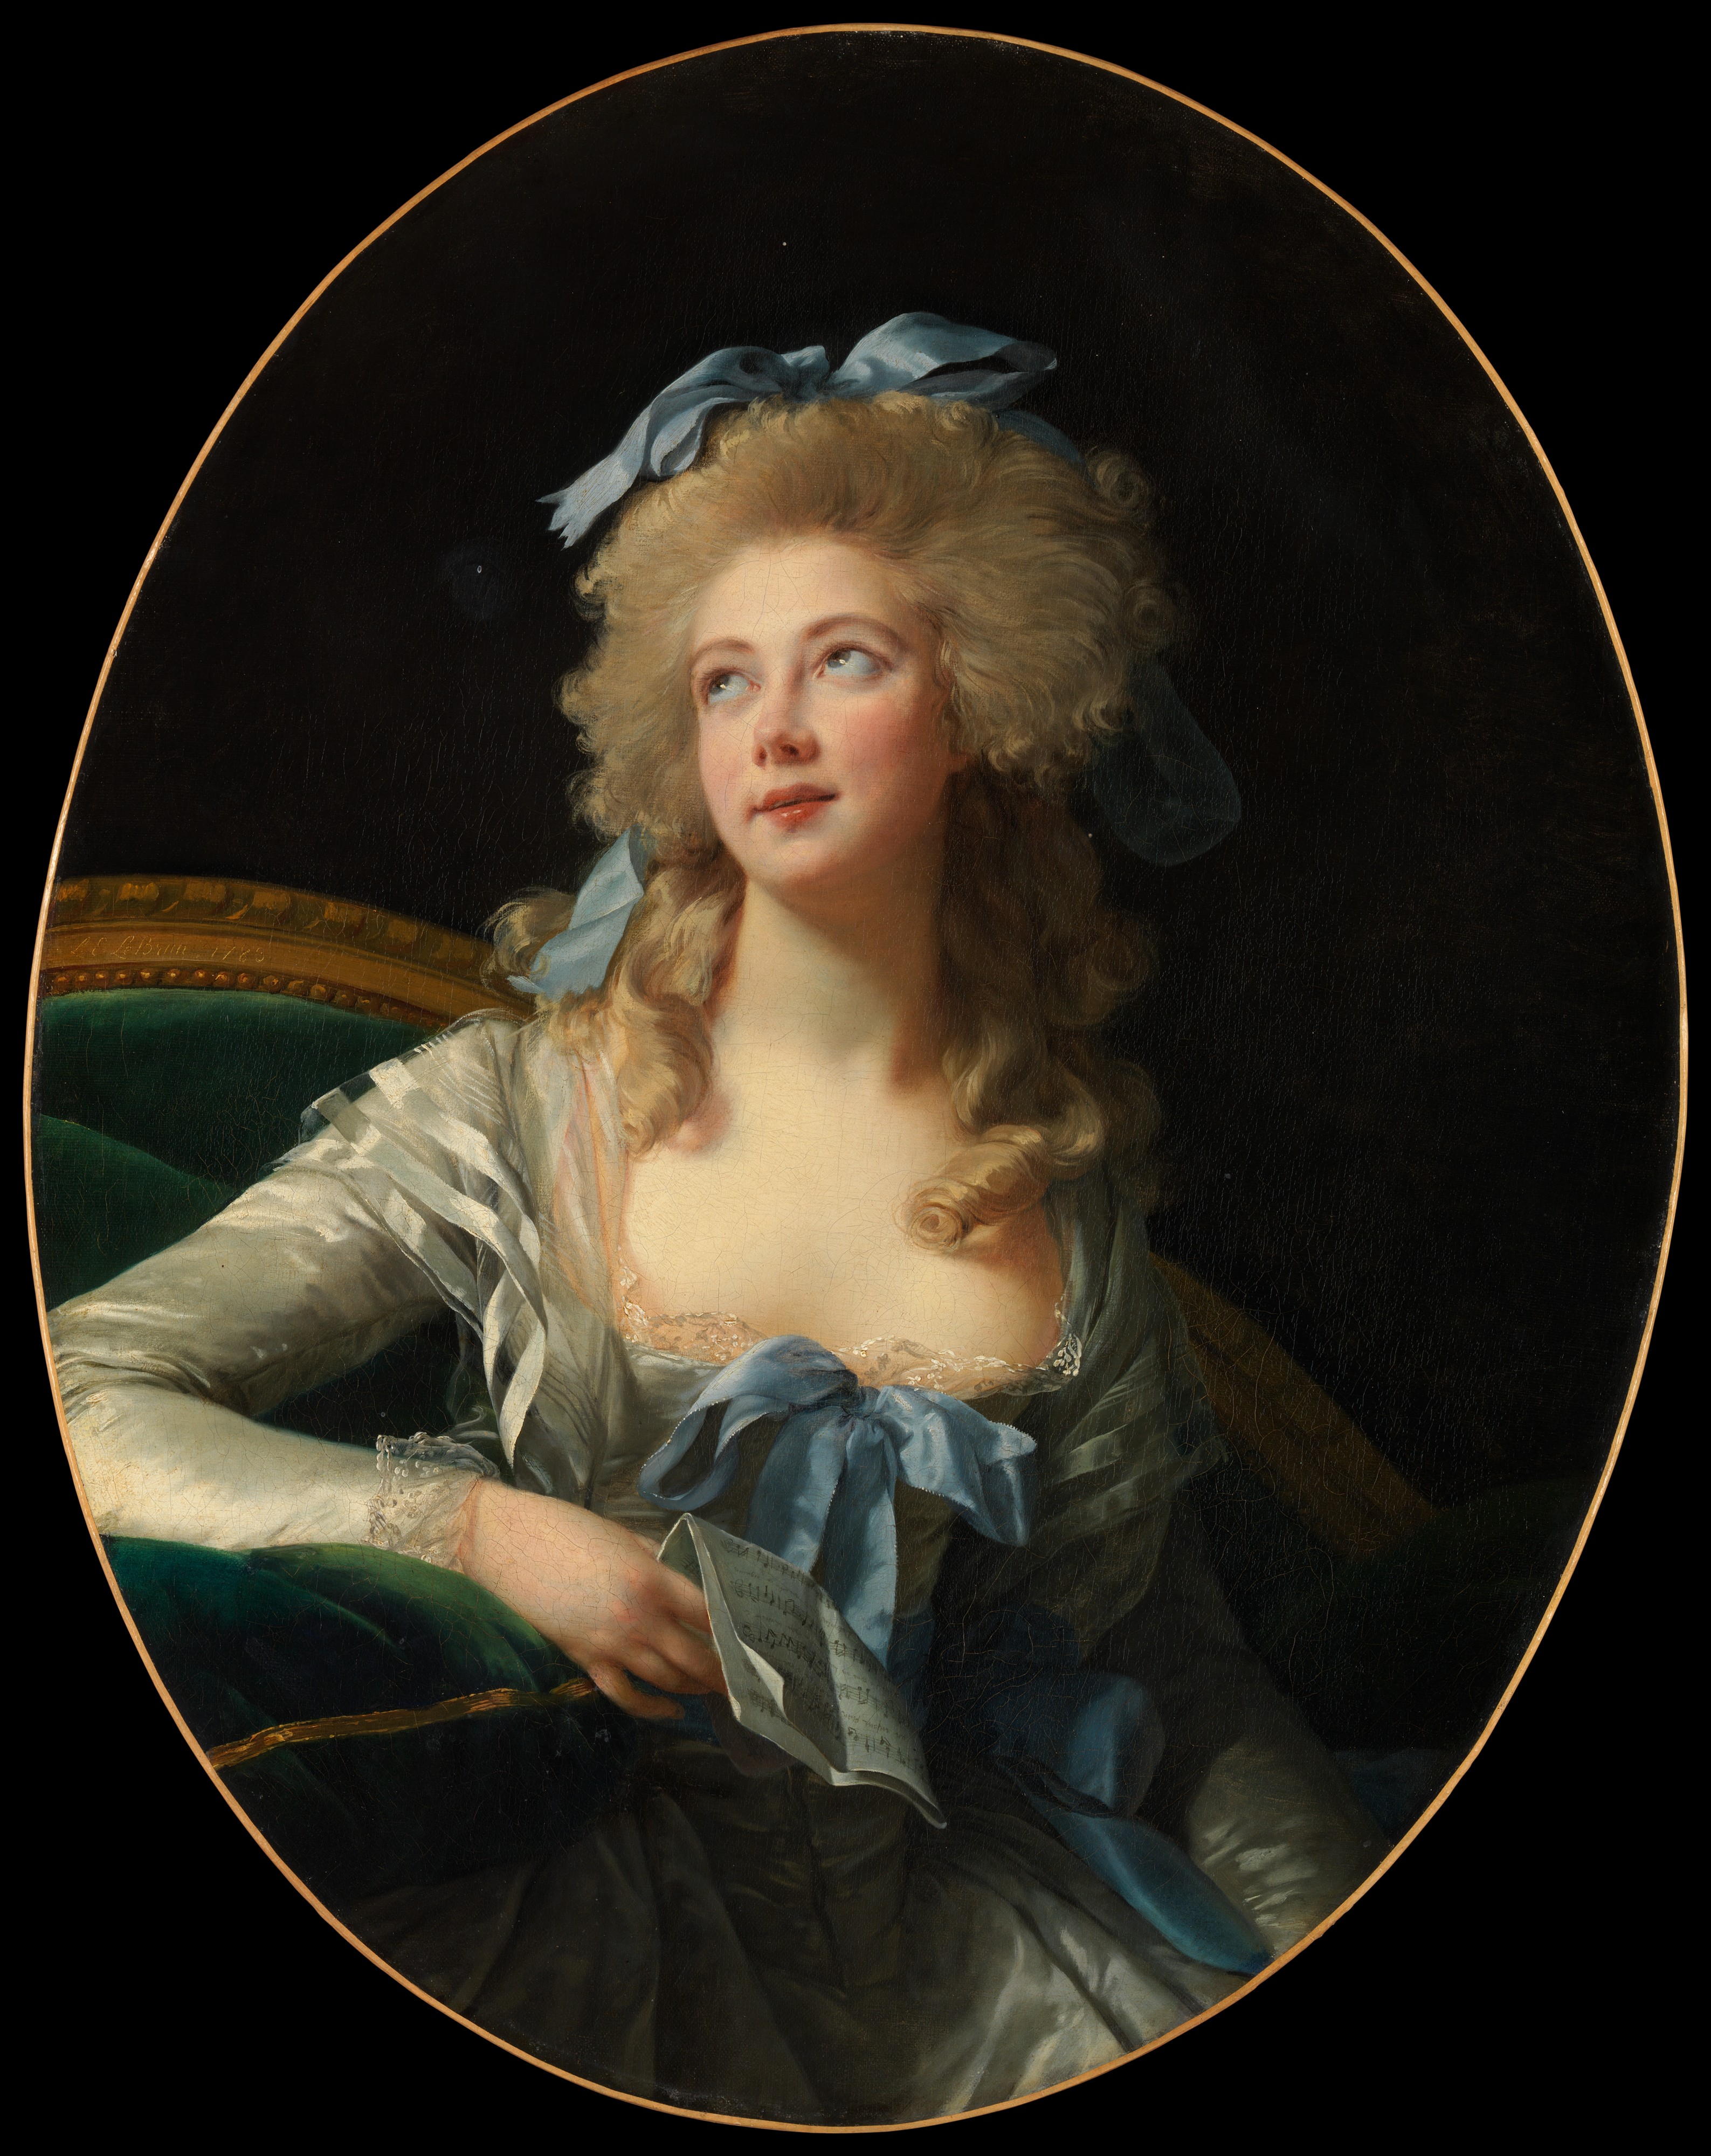 Мадам Гранд (Ноэль Катрин Верле) by Élisabeth Vigee Le Brun - 1783 - 92.1 x 72.4 cm 